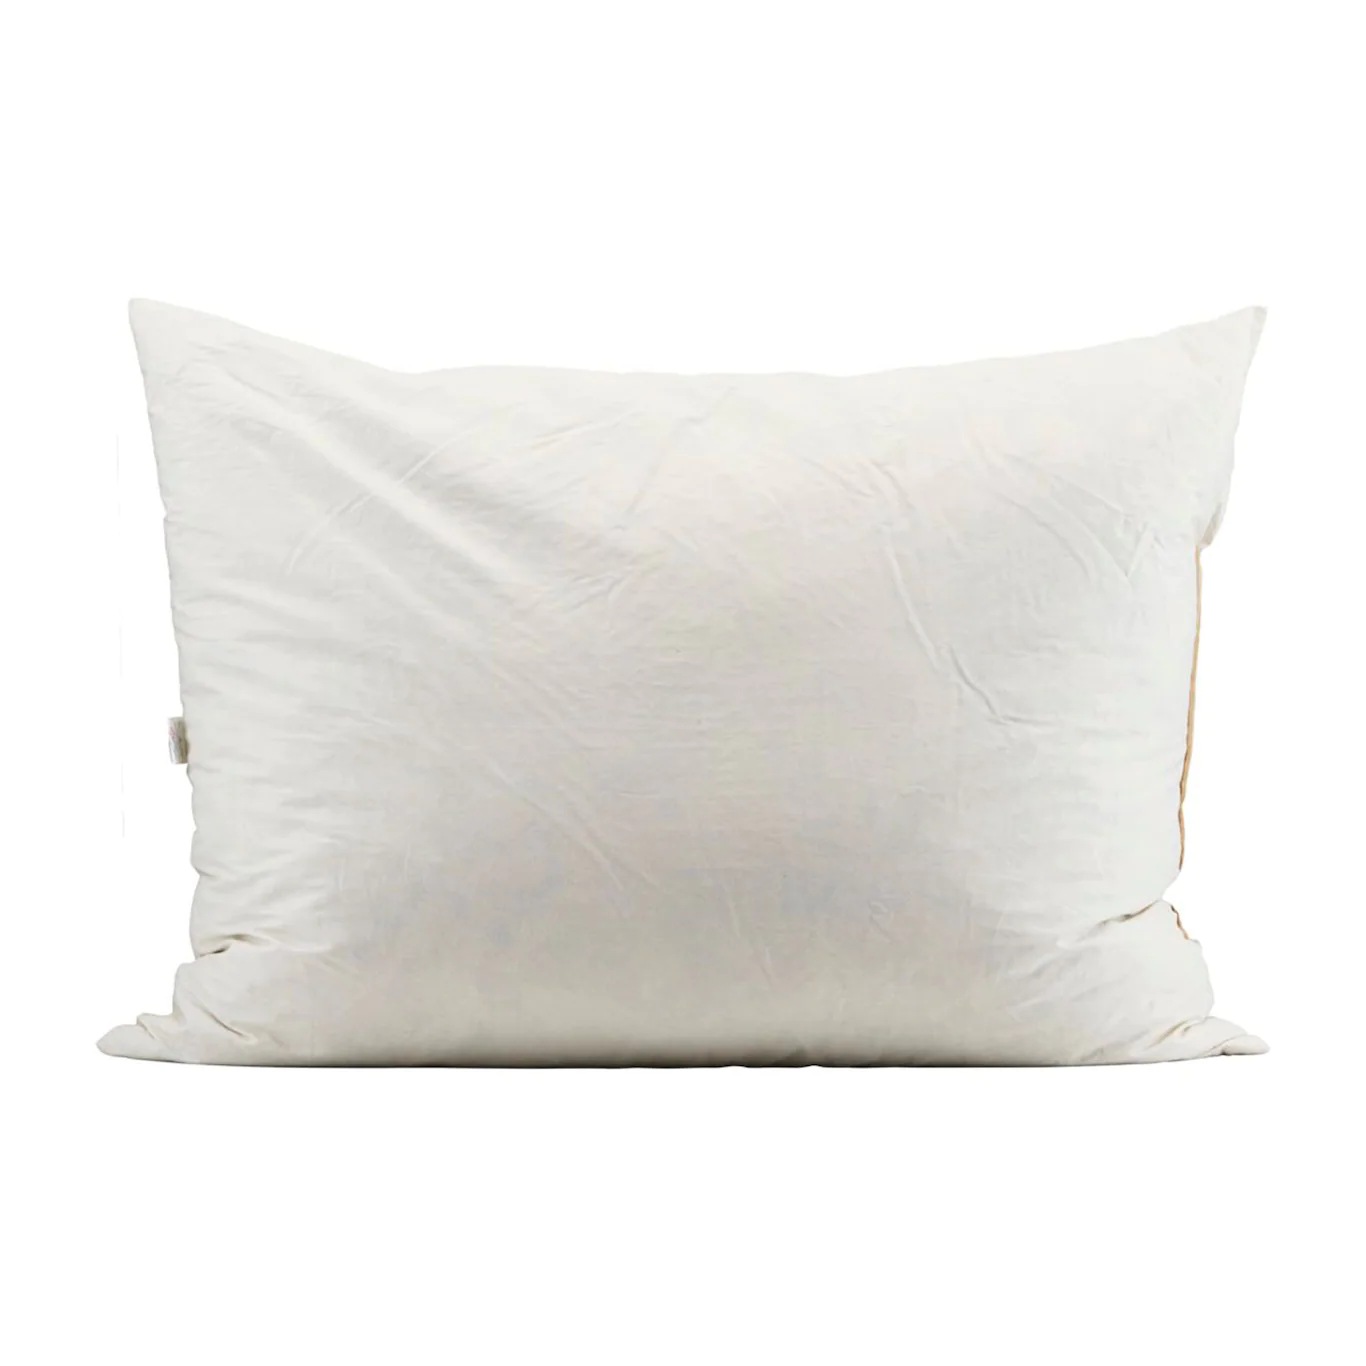 Inner pillow 50x70 cm 1100g